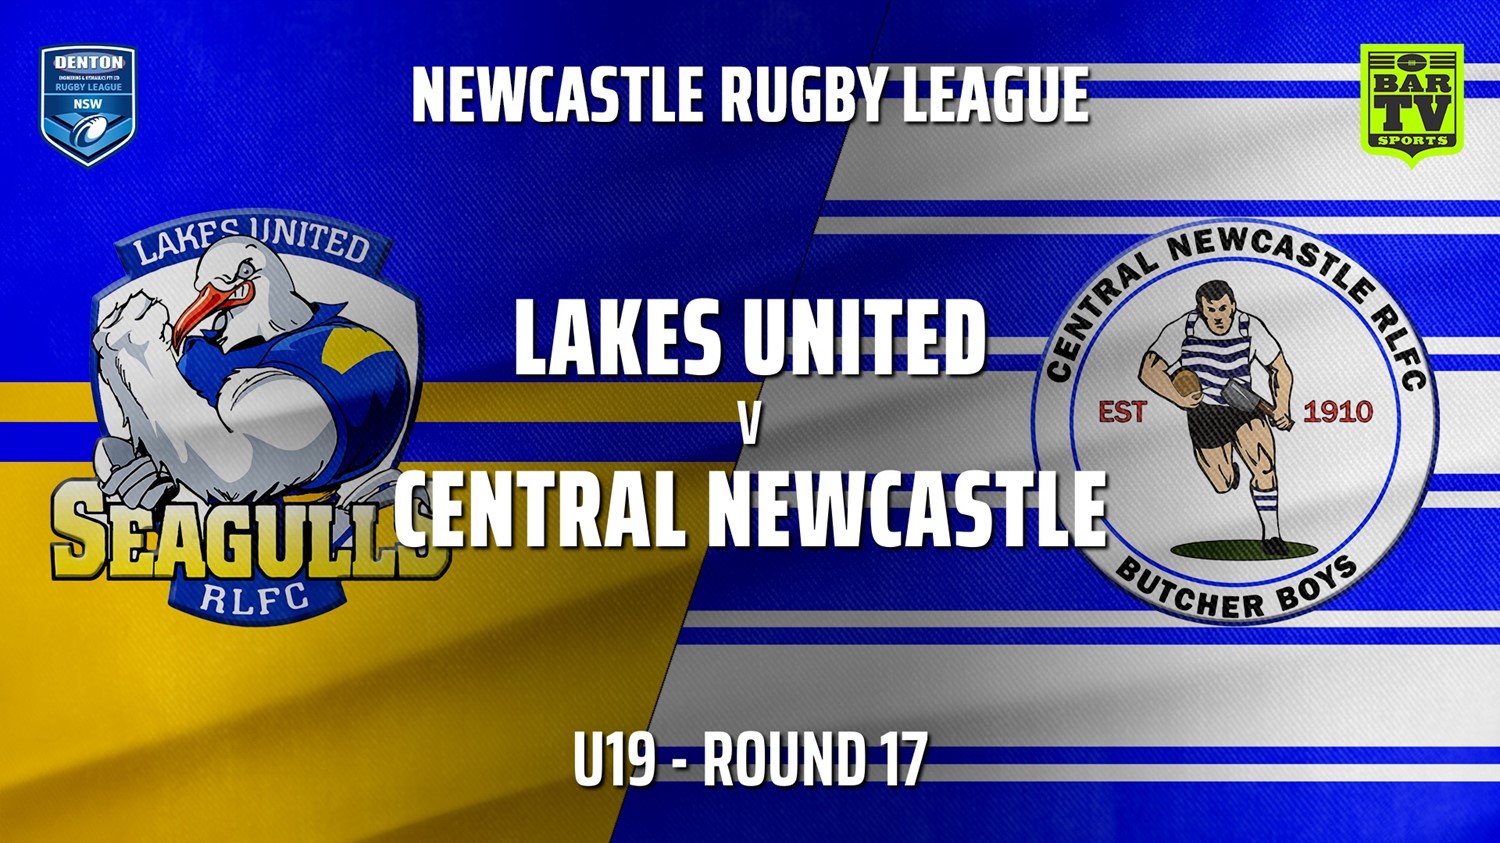 210731-Newcastle Round 17 - U19 - Lakes United v Central Newcastle Slate Image